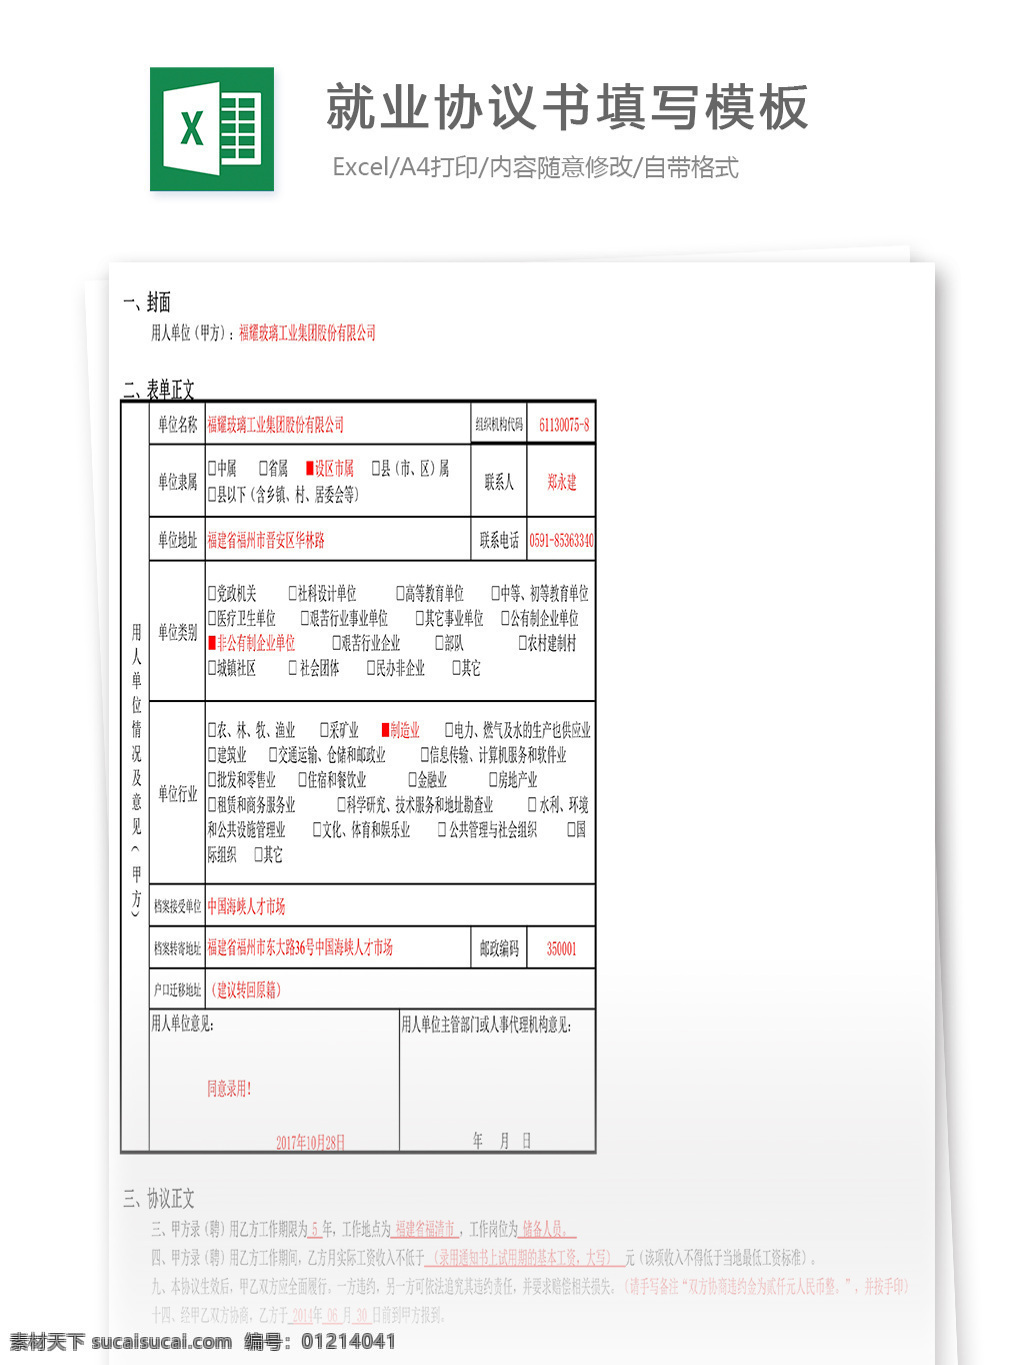 就业 协议书 填写 模板 表格 表格模板 表格设计 图表 填写模板